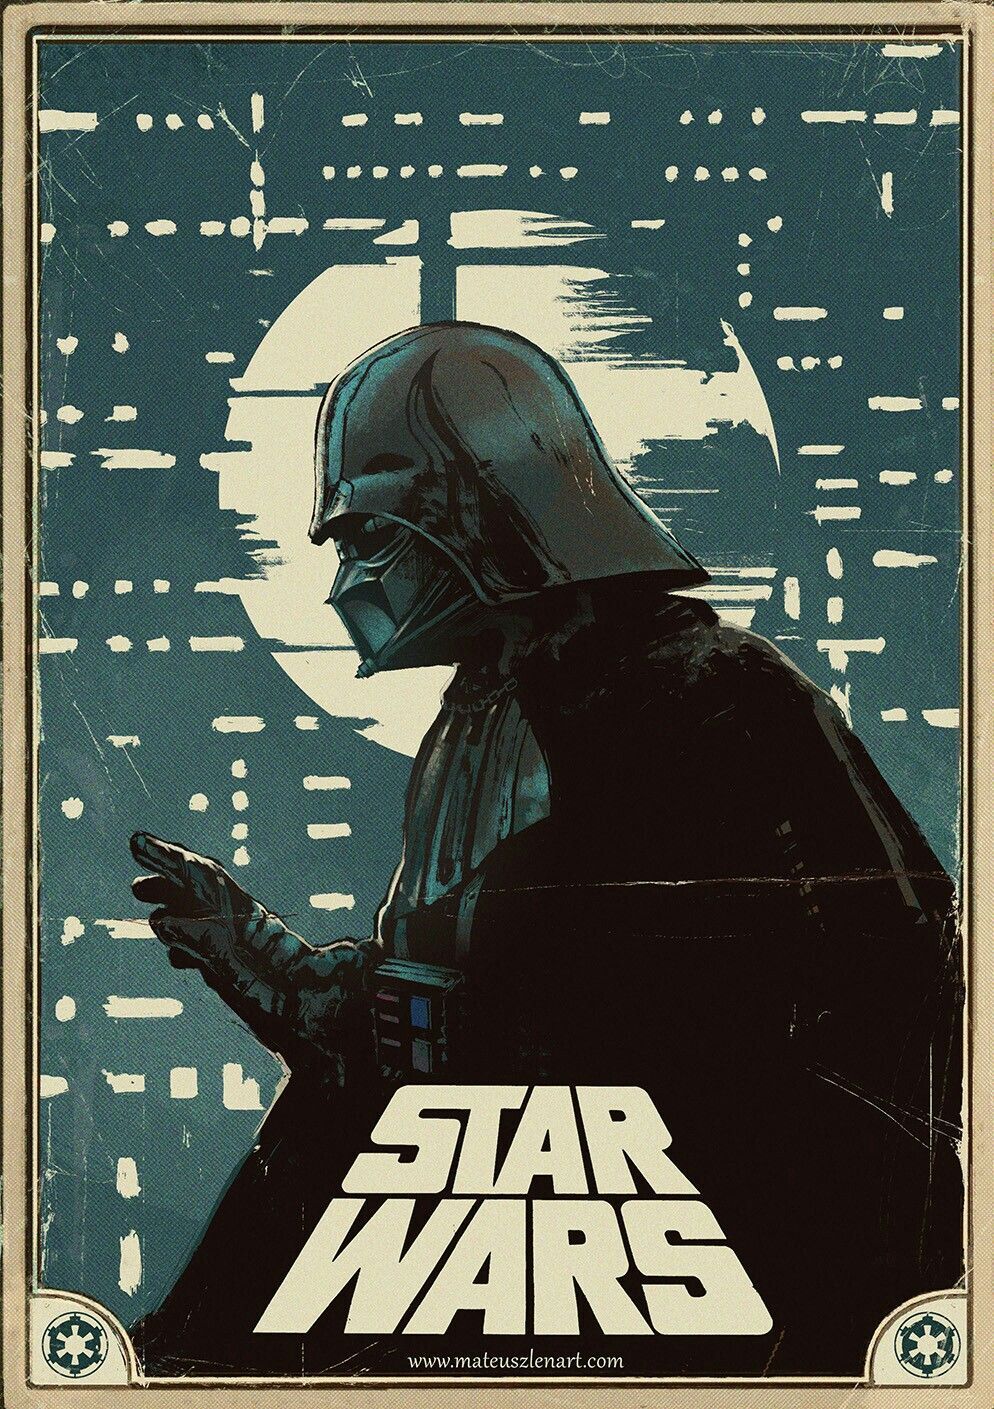 STAR WARS DARTH VADER. Star wars art, Star wars poster, Star wars wallpaper